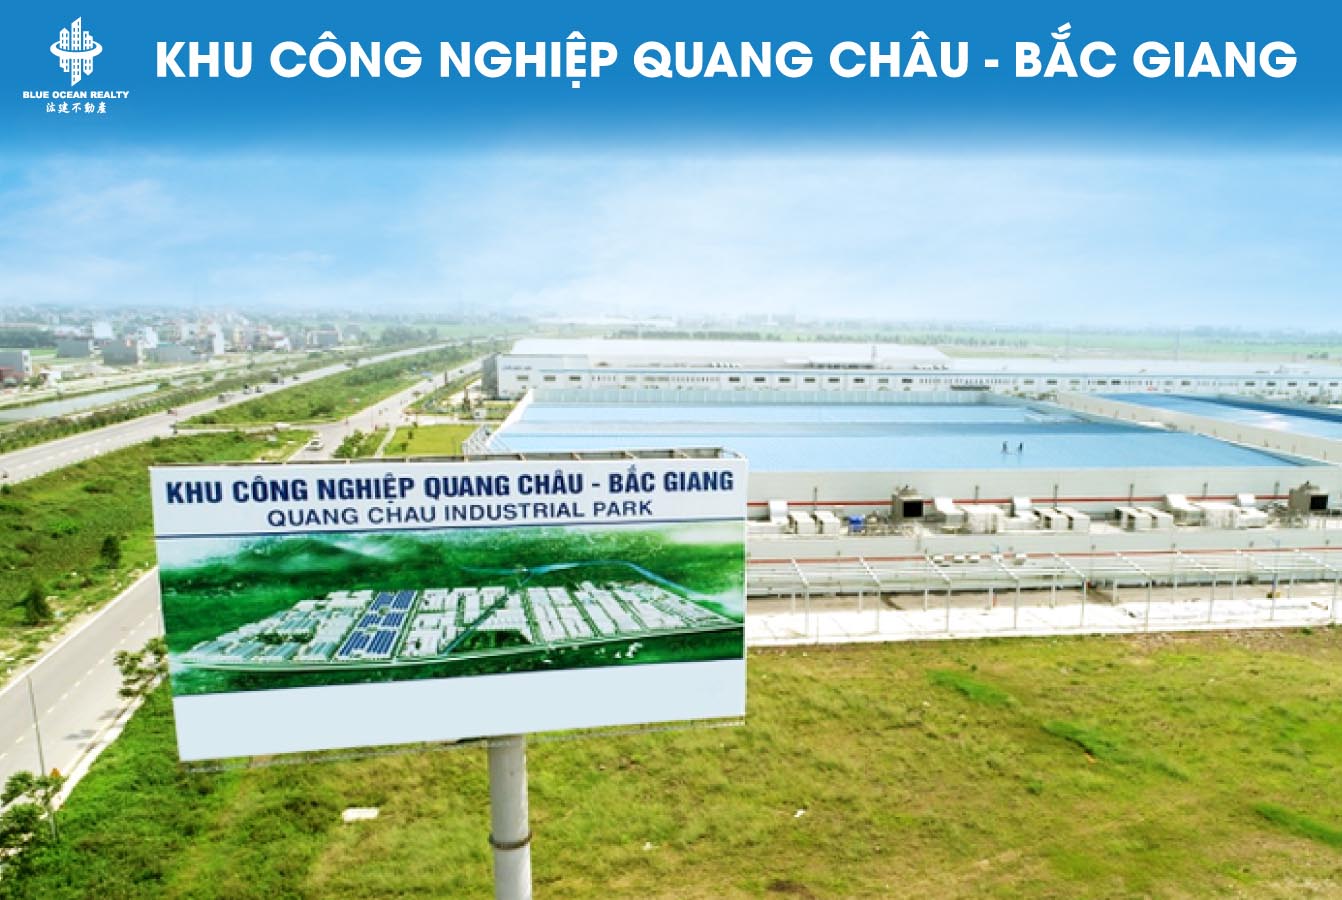 kcn-Quang-chau